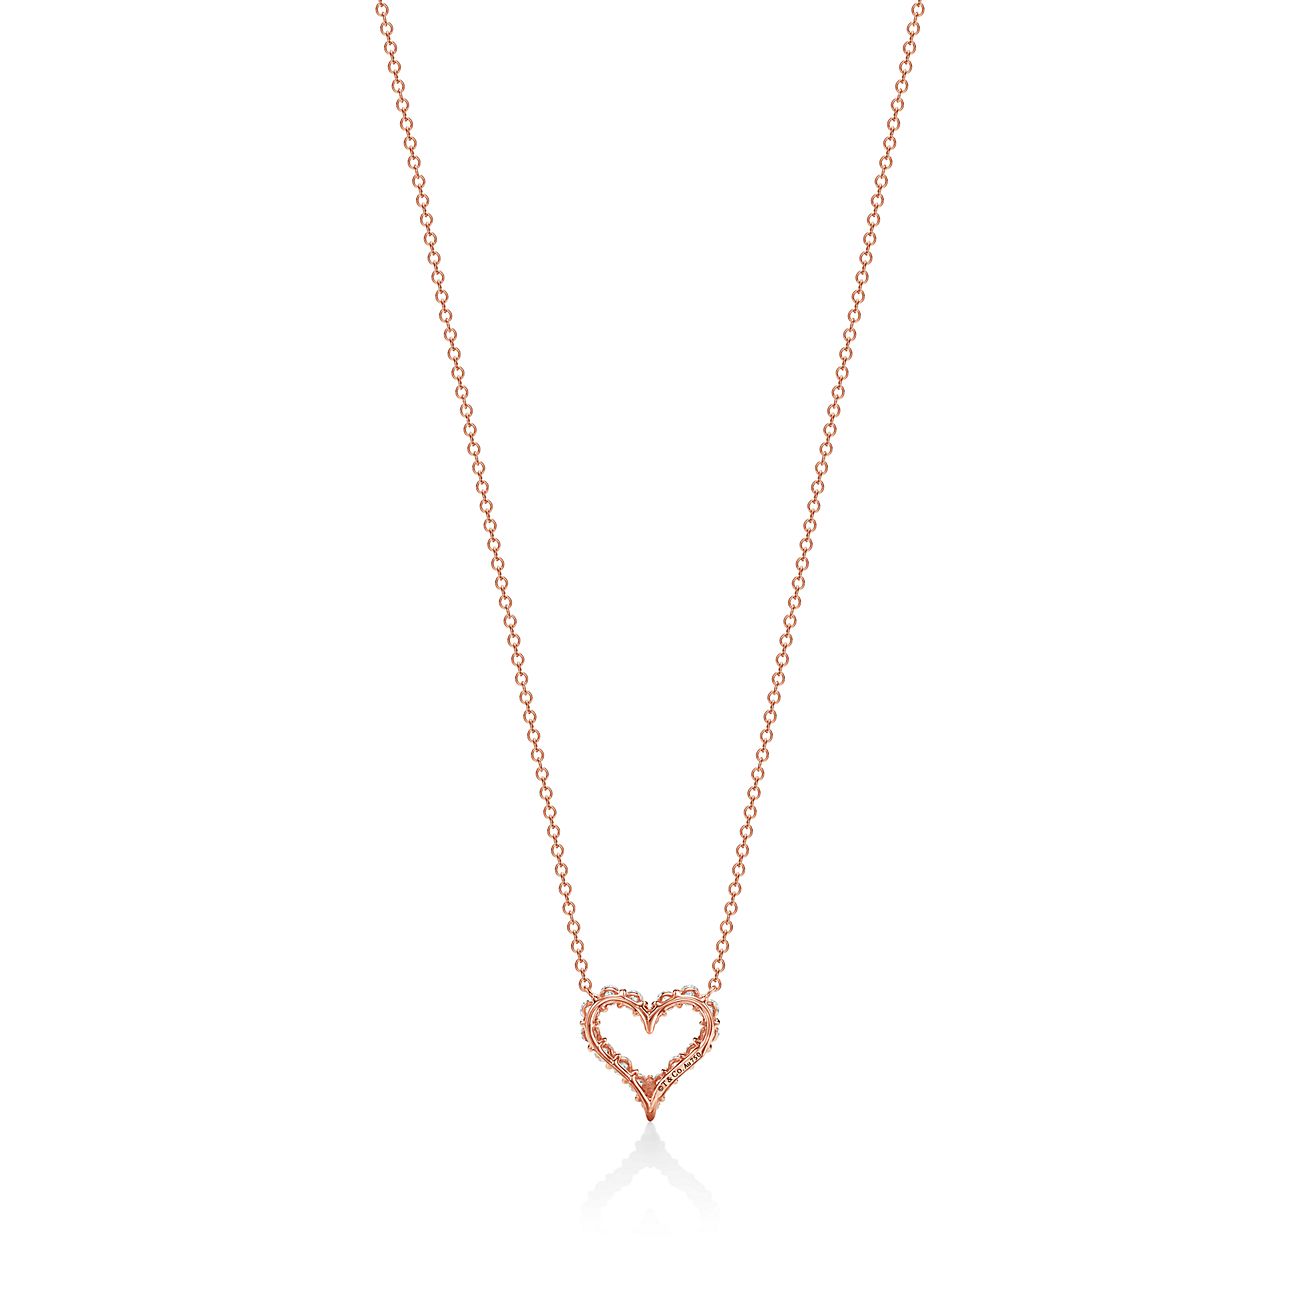 Tiffany & Co. Diamond Heart Lock Pendant